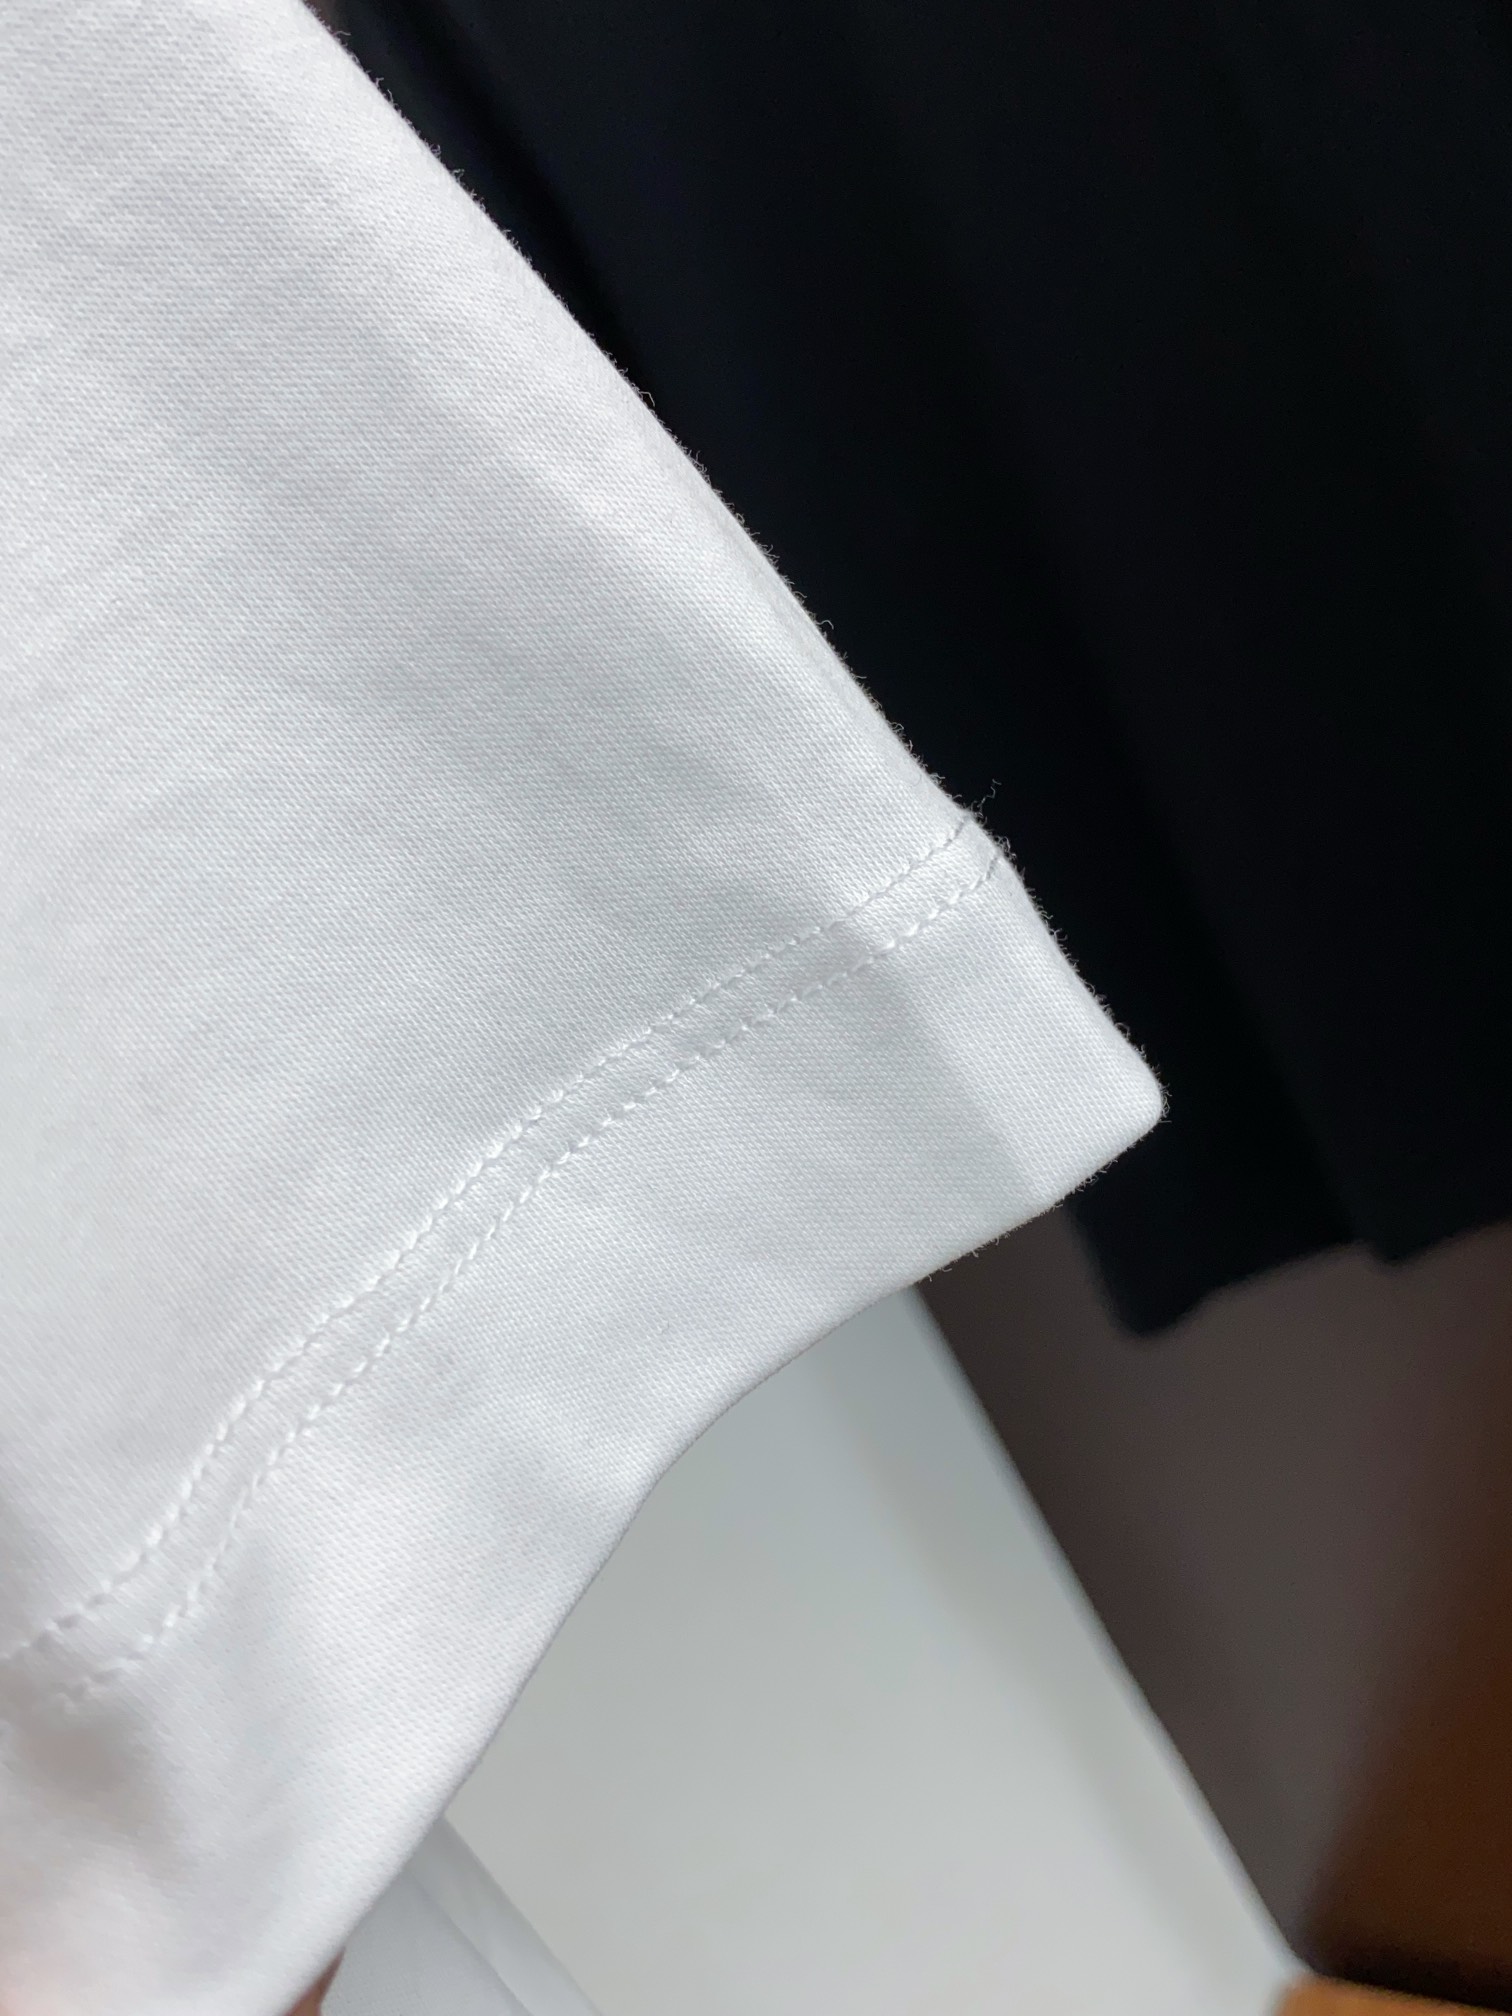 fendi ワイシャツスーパーコピー トップス 綿100% プリント 短袖 ゆったり シンプル 柔らかい メンズ ホワイト_5